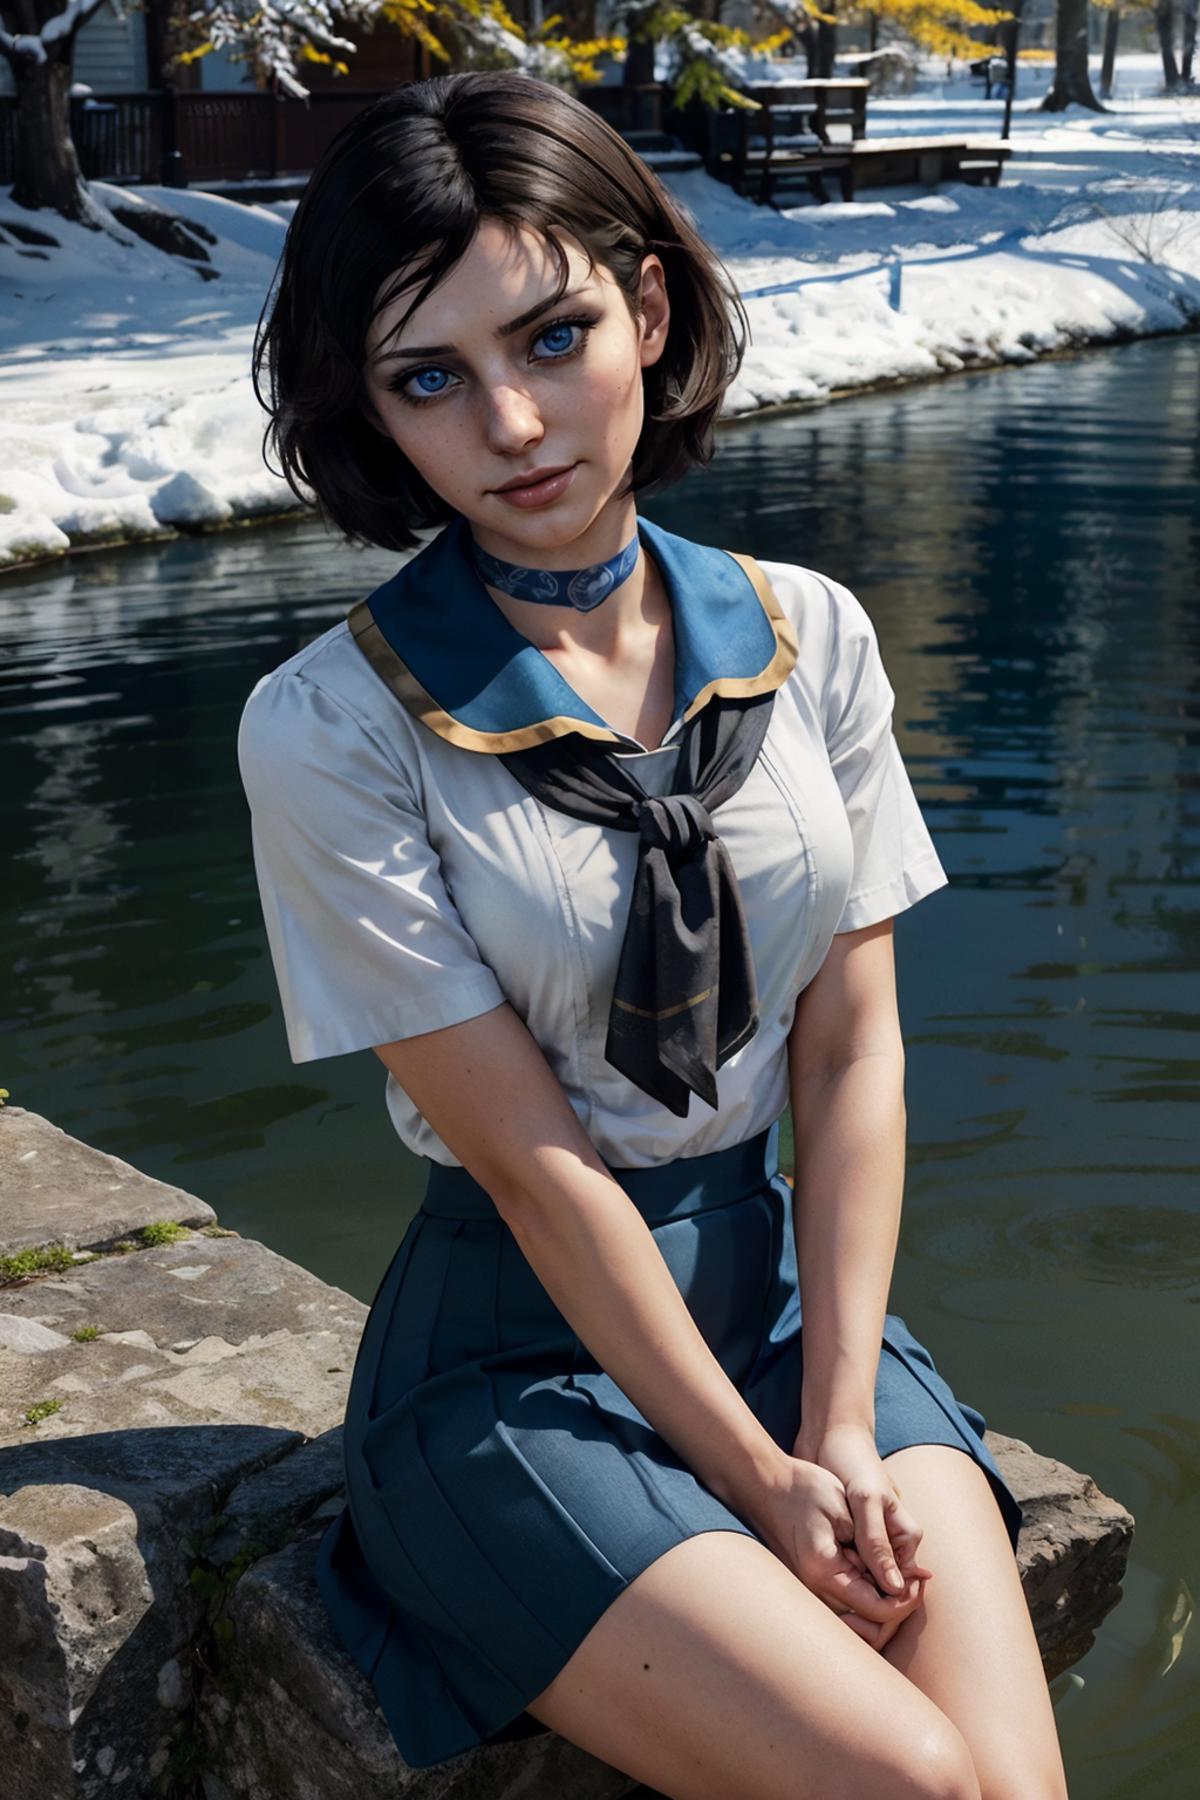 Elizabeth from BioShock Infinite image by wikkitikki